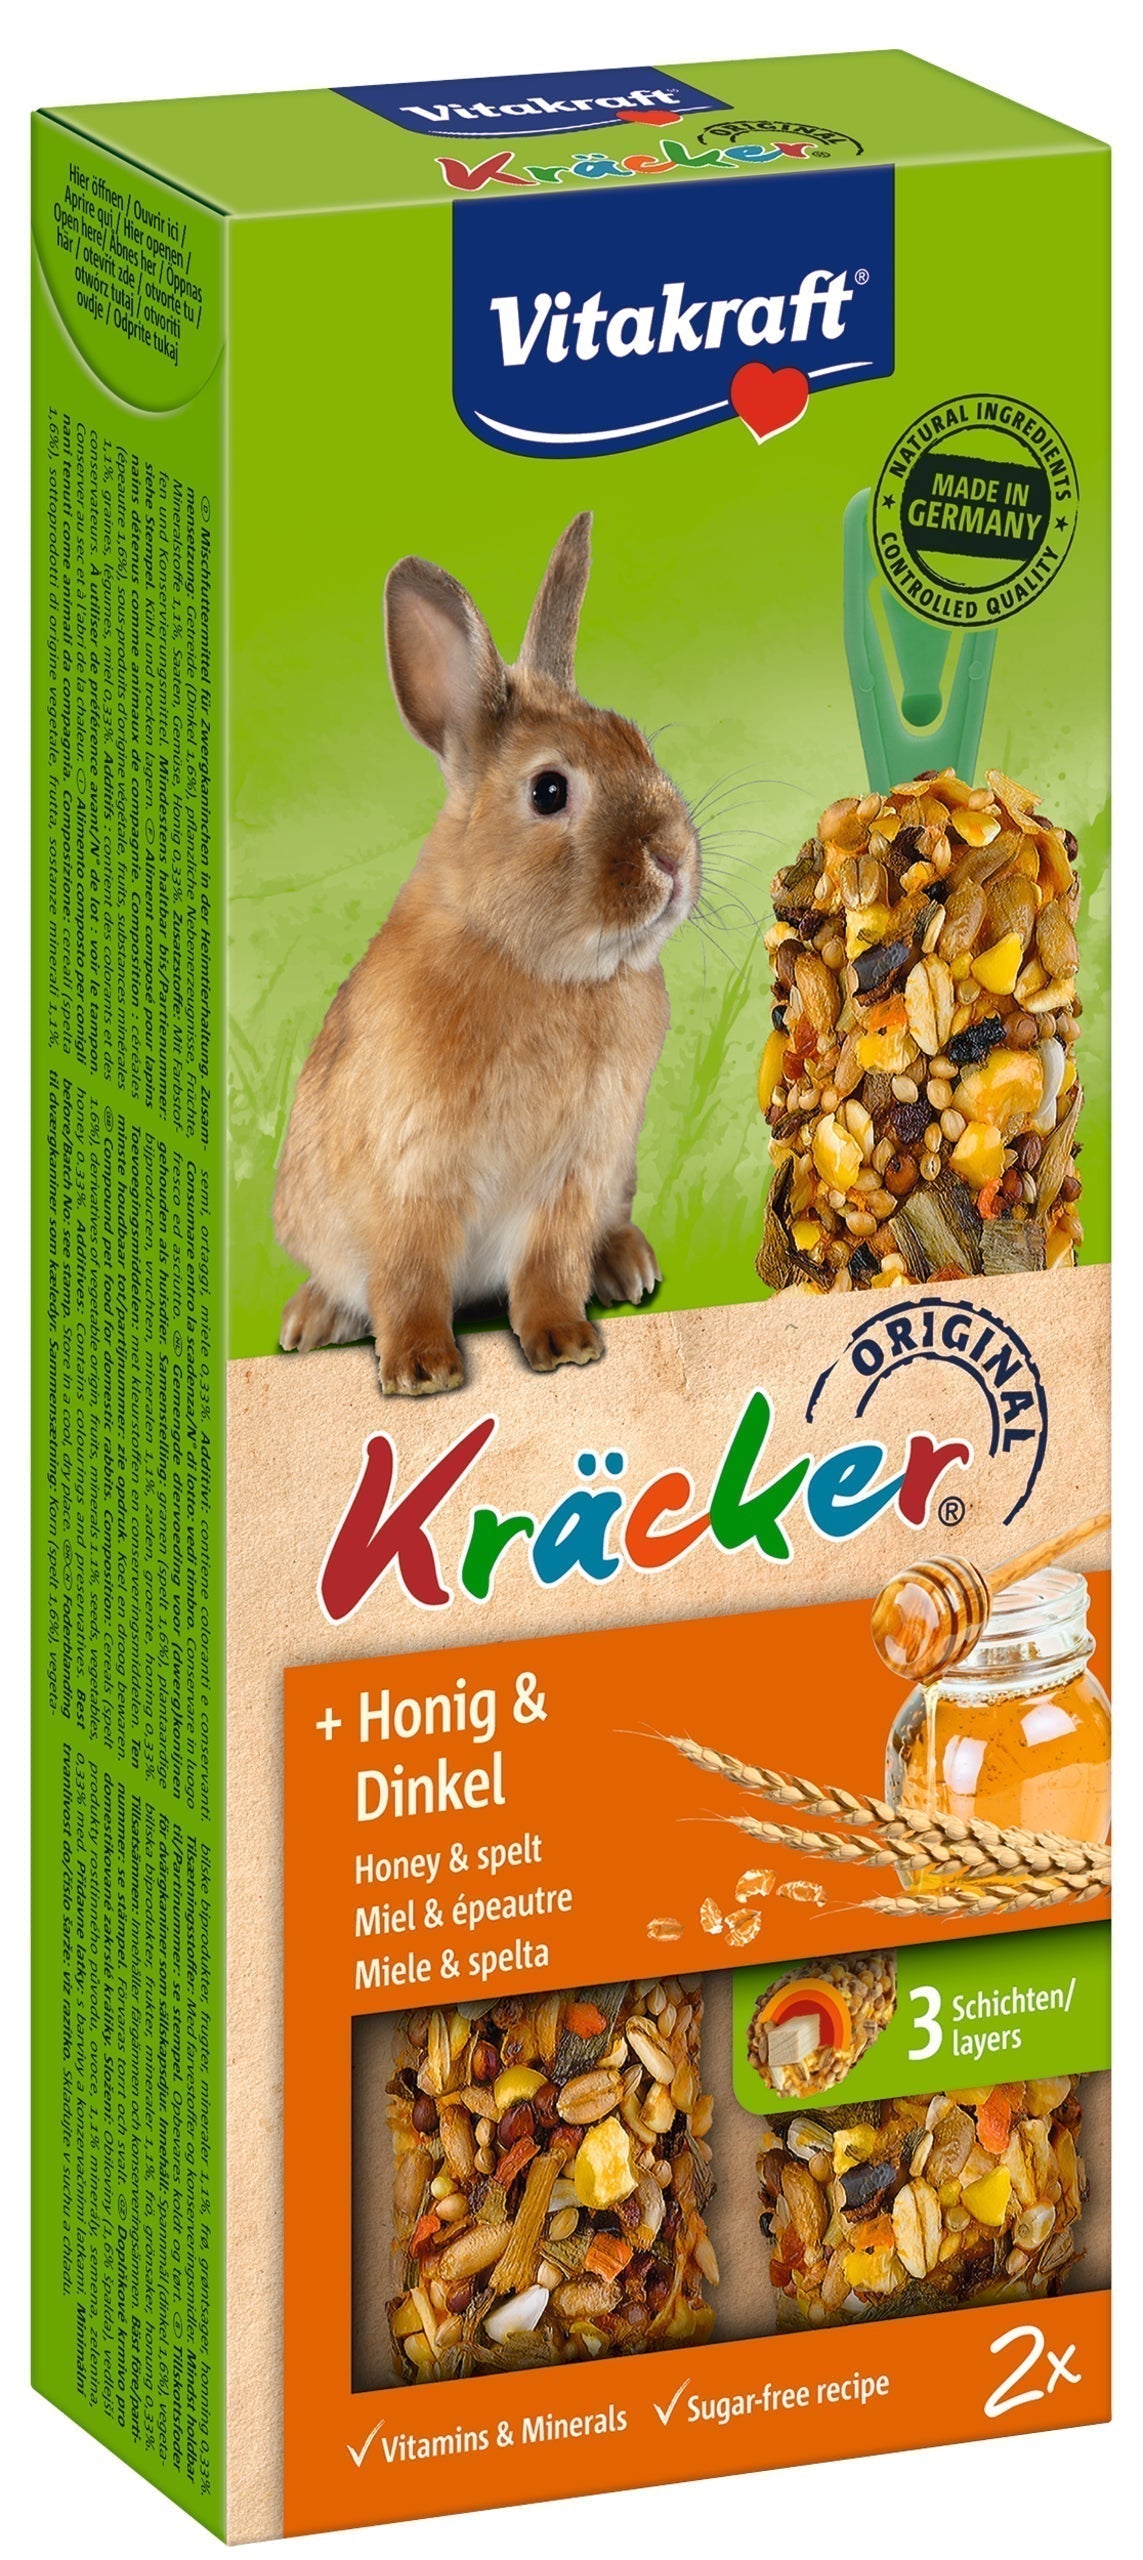 Beskrivelse: Kräcker, lækker stænger til kaniner fra Vitakraft er en sukkerfri opskrift perfekt til kaniner.